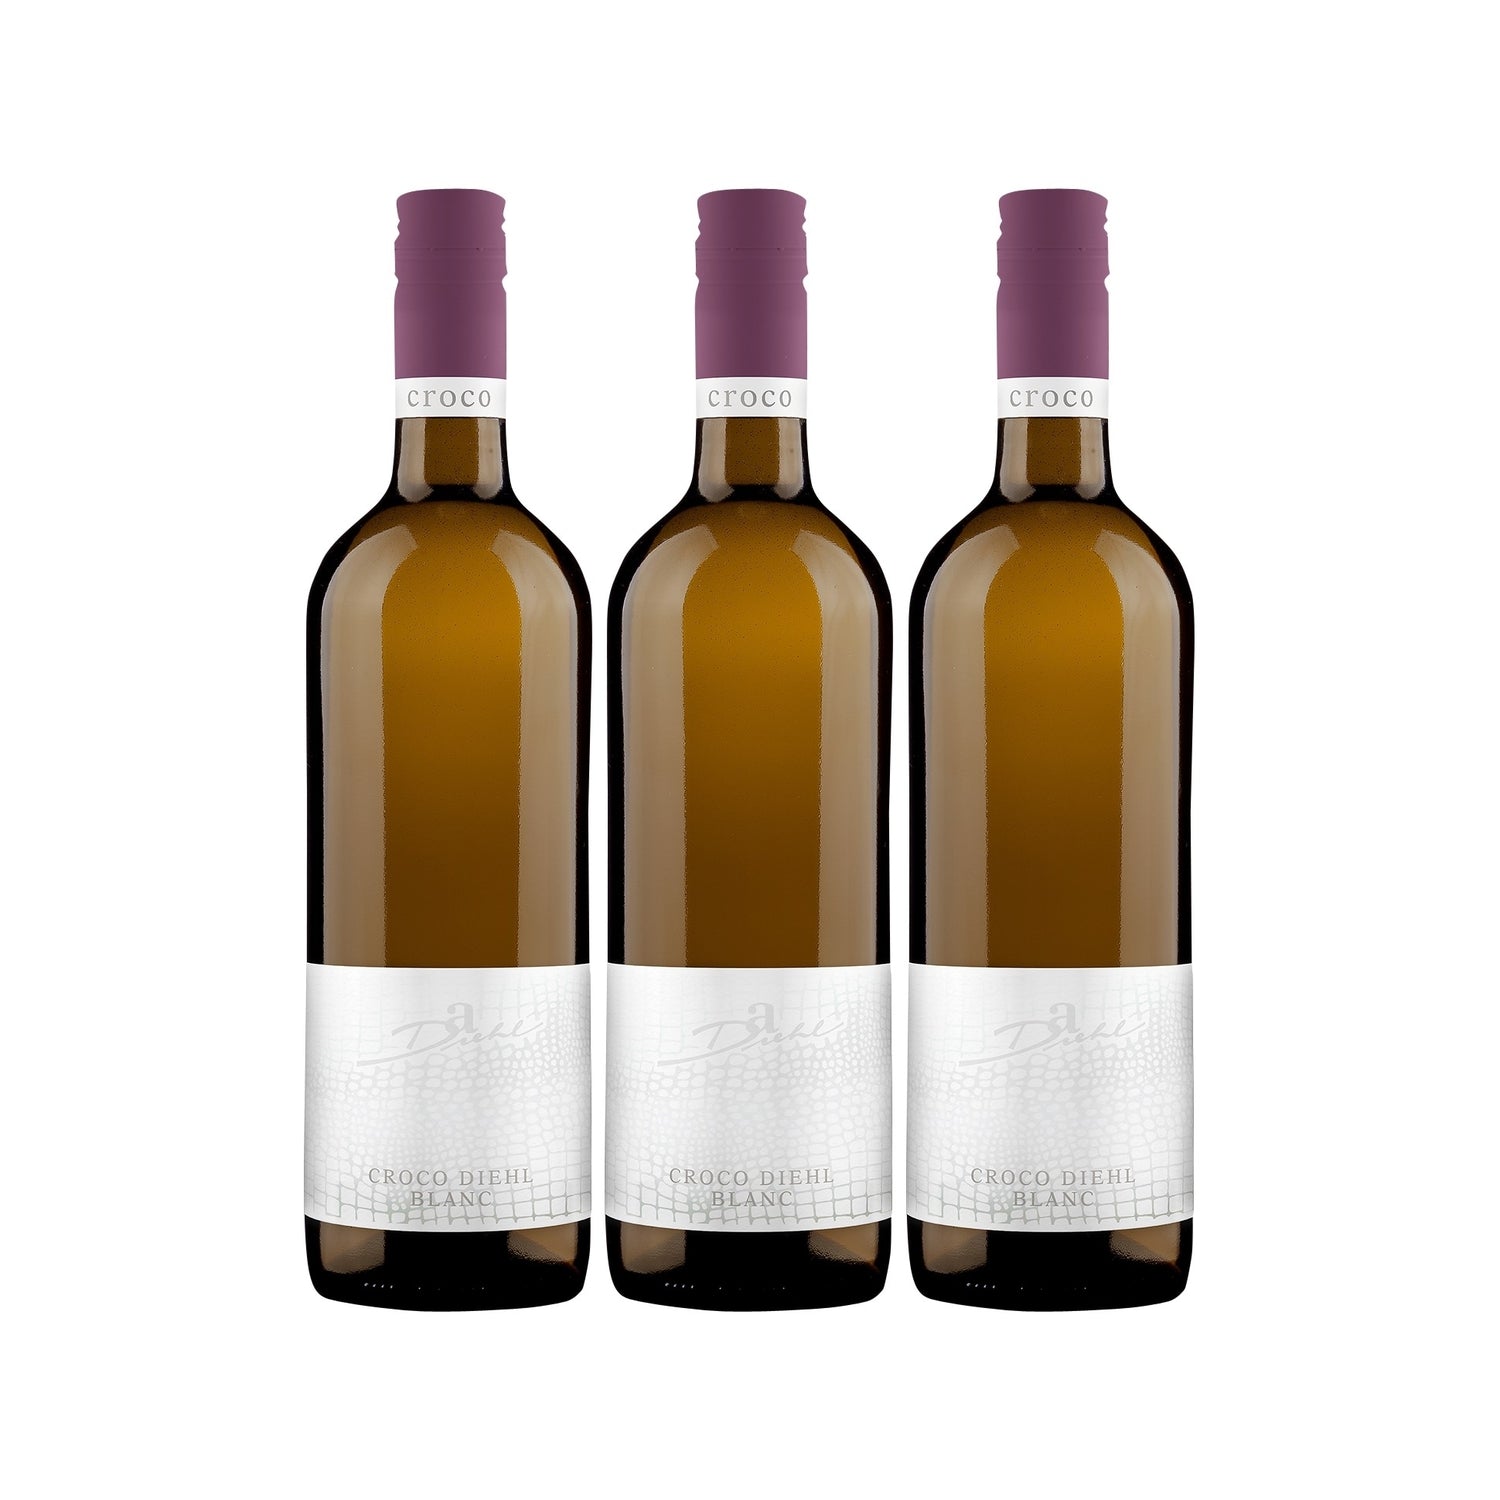 A. Diehl Croco Diehl Blanc Weißwein veganer Wein trocken QbA Deutschland (3 x 0.75l) - Versanel -